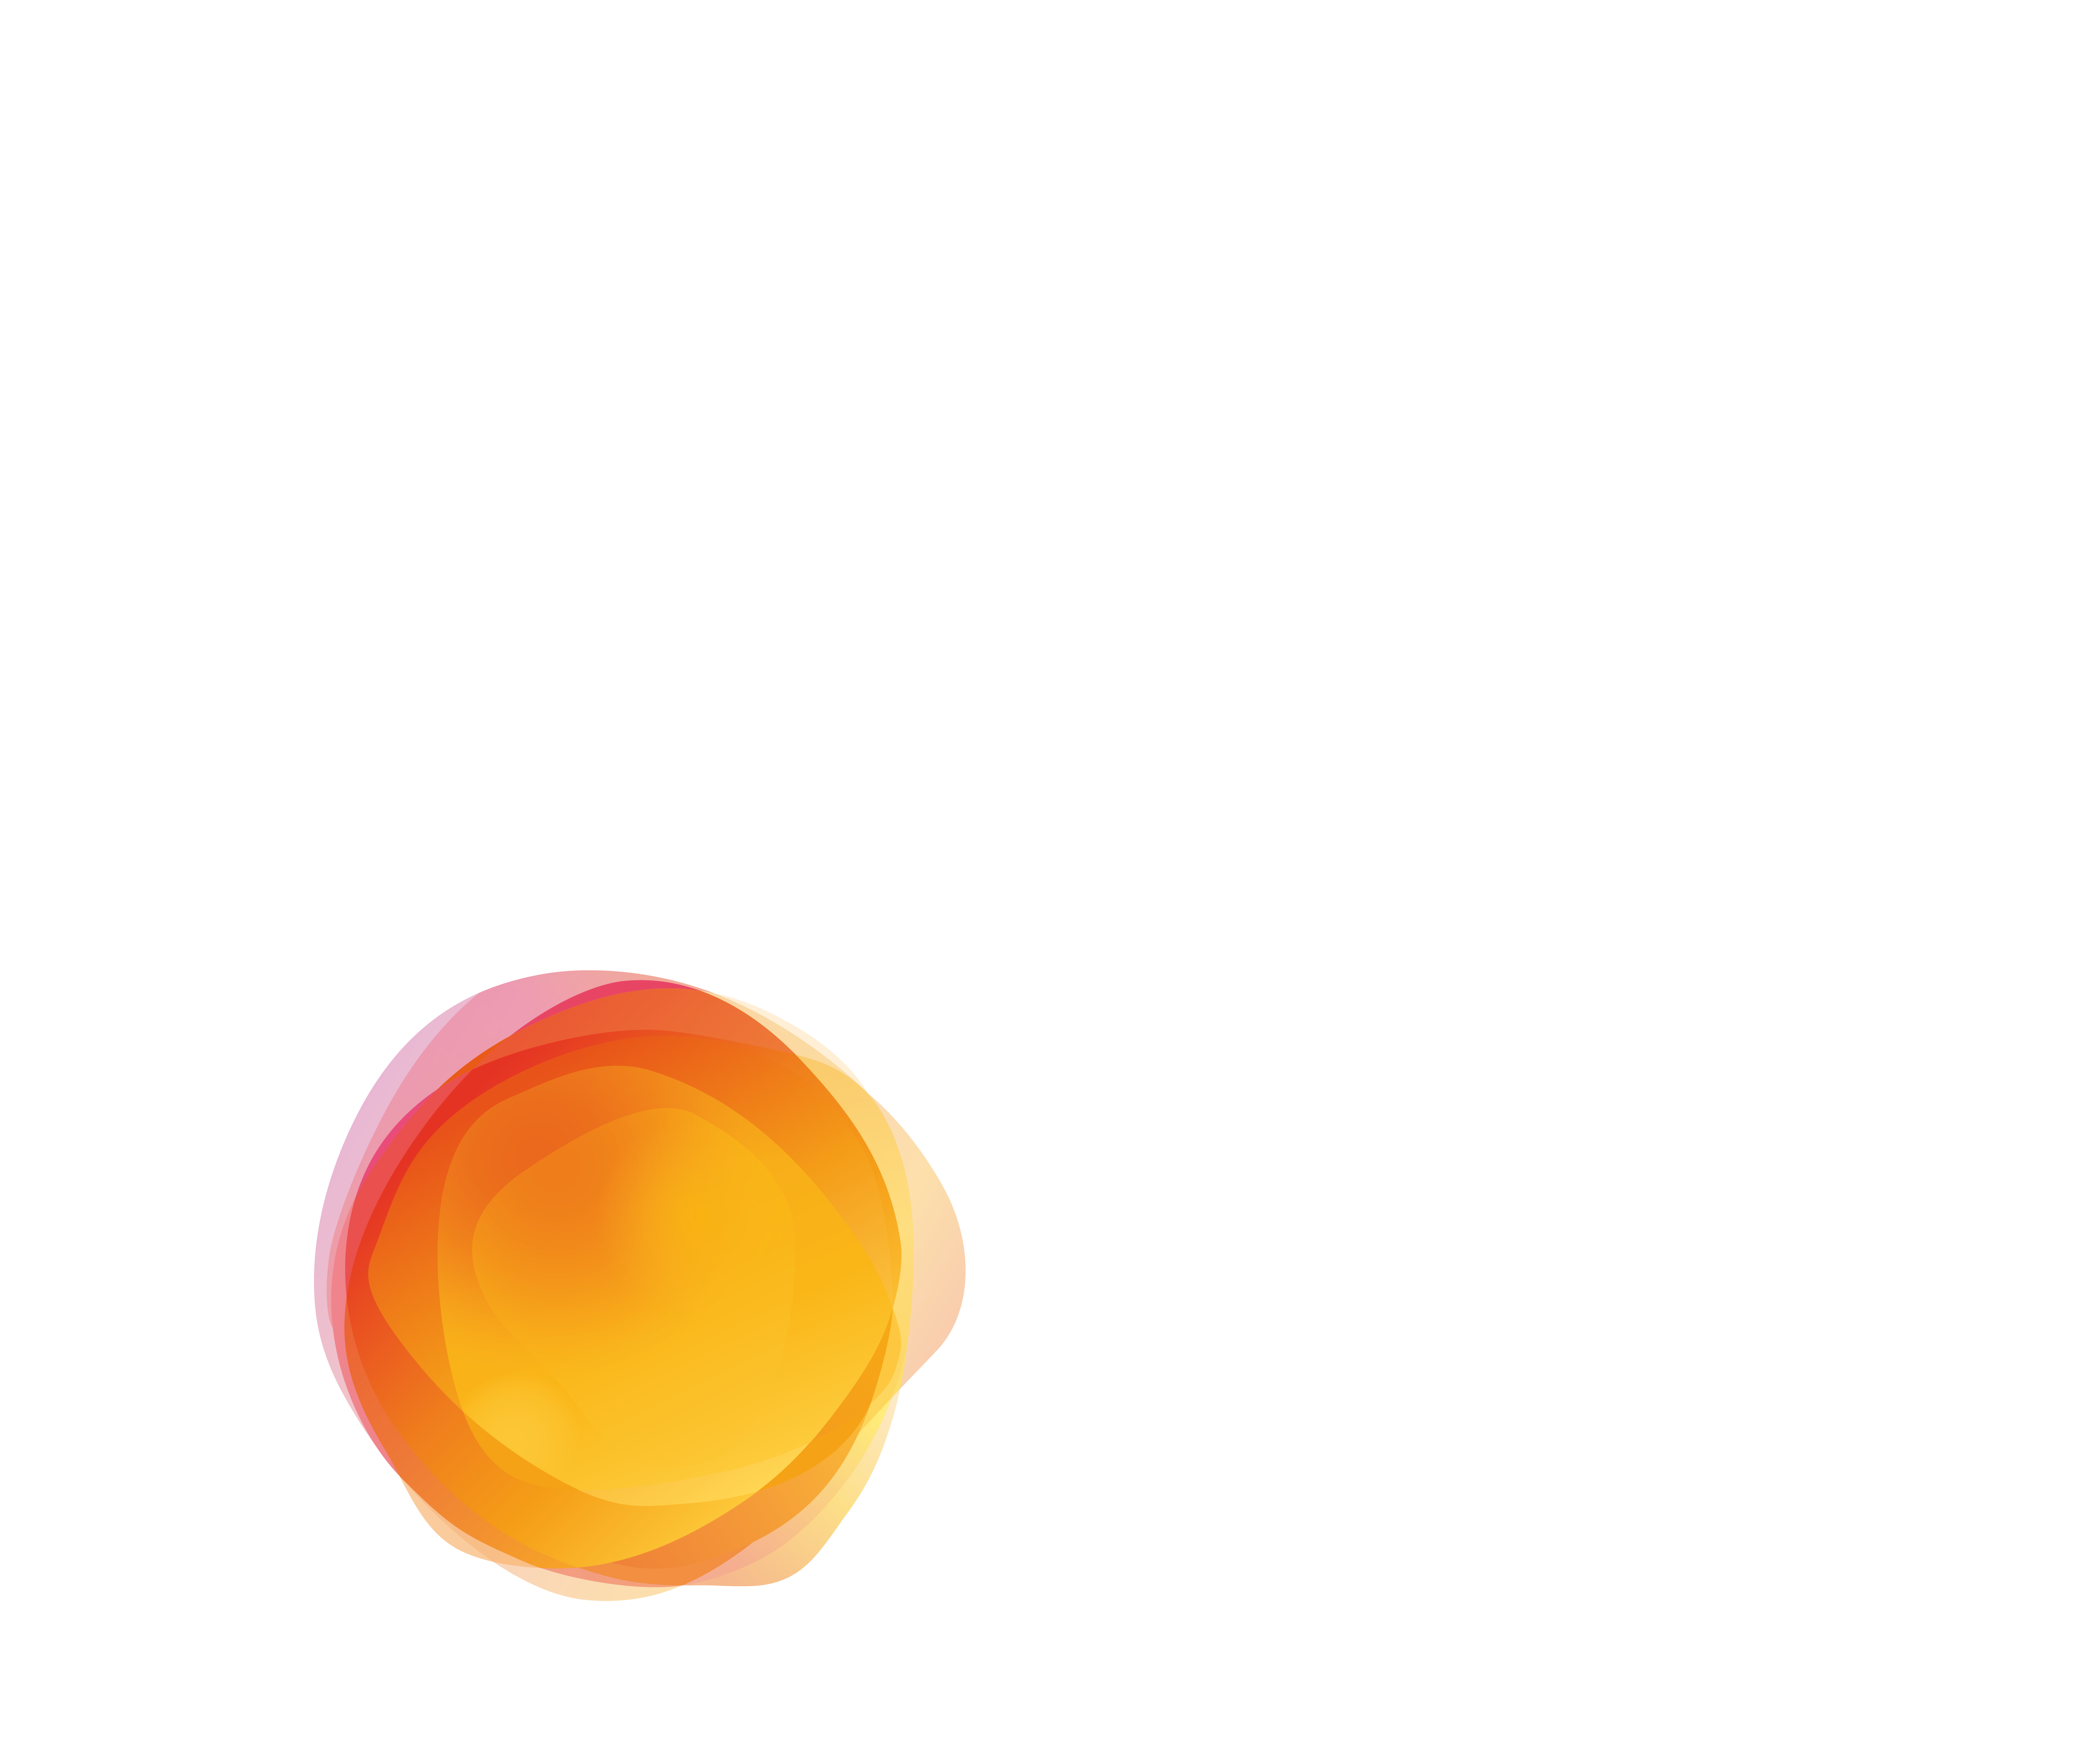 Radicle Challenge